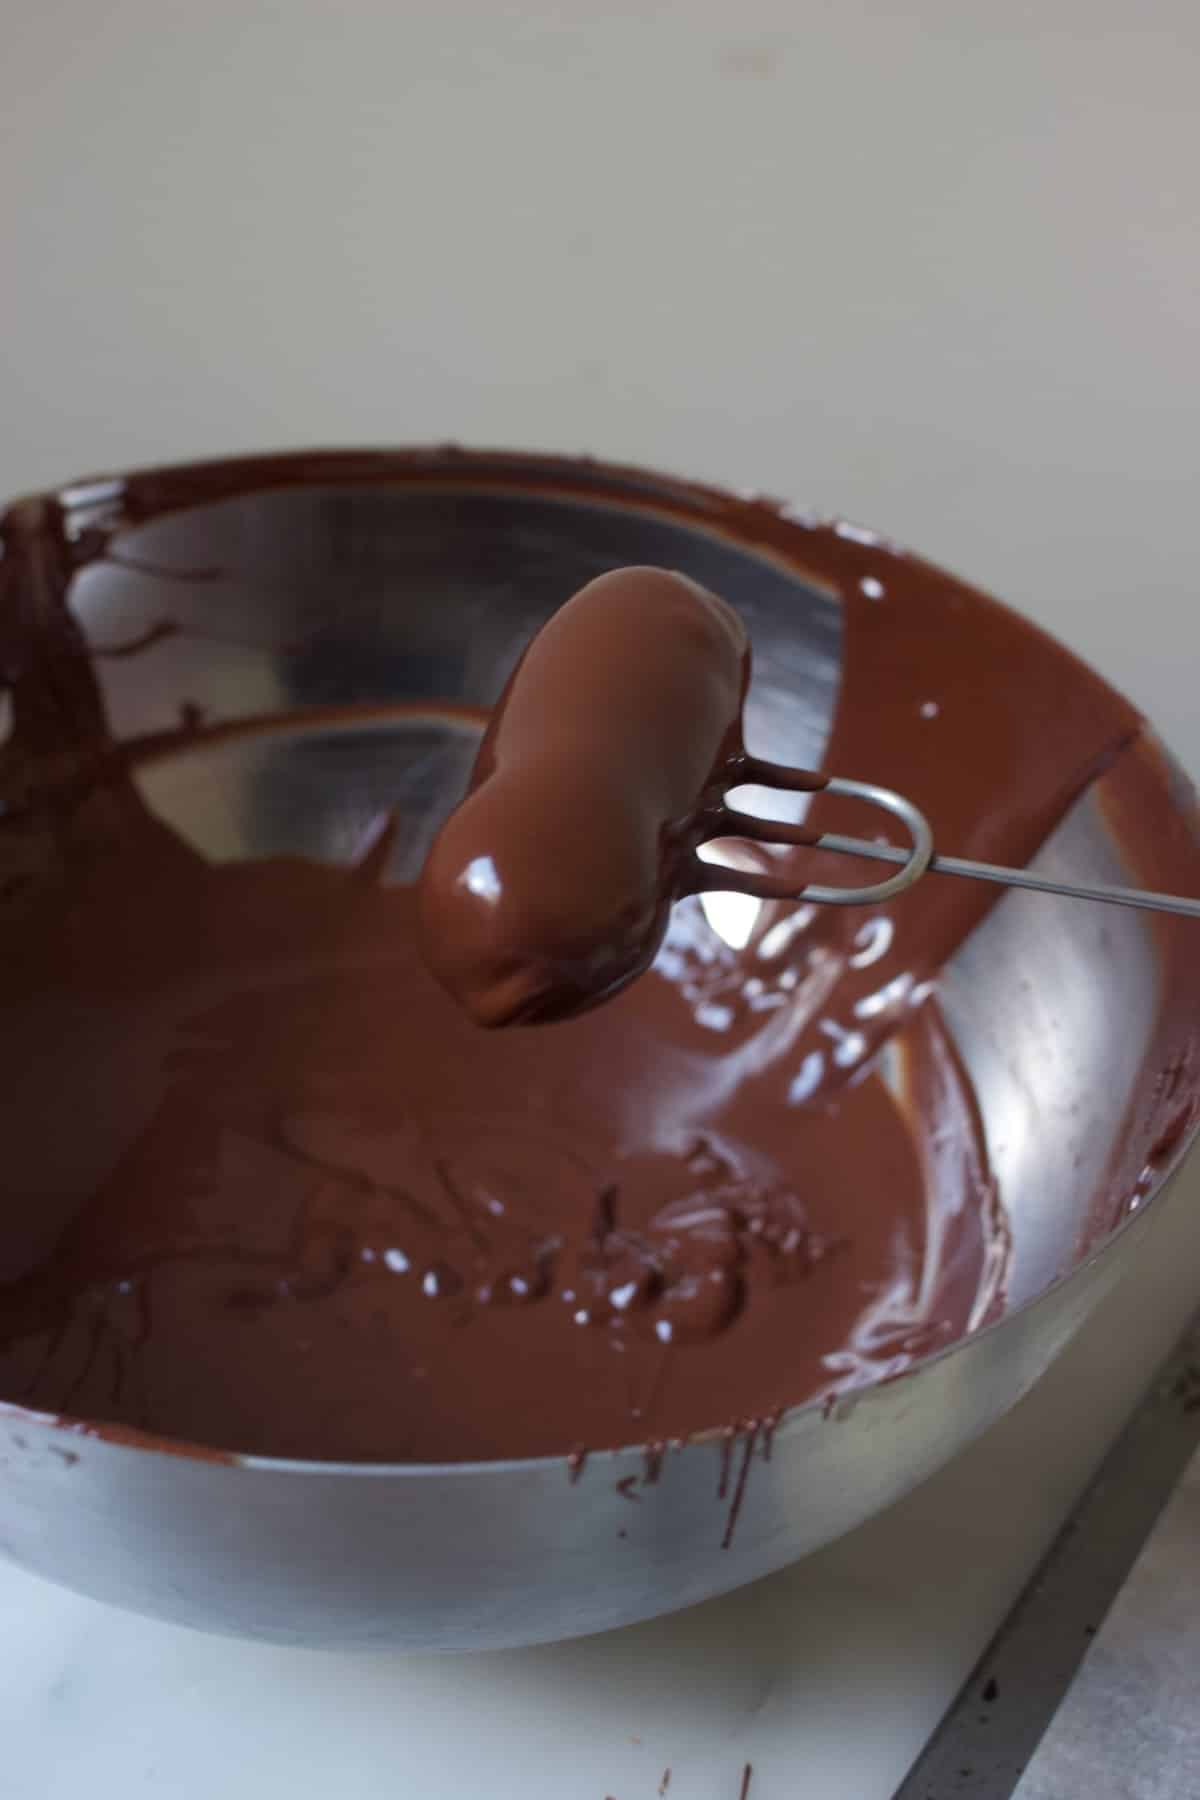 een slagroomtruffel die net door de gesmolten chocolade is gehaald en nu op een bonbonvorkje ligt